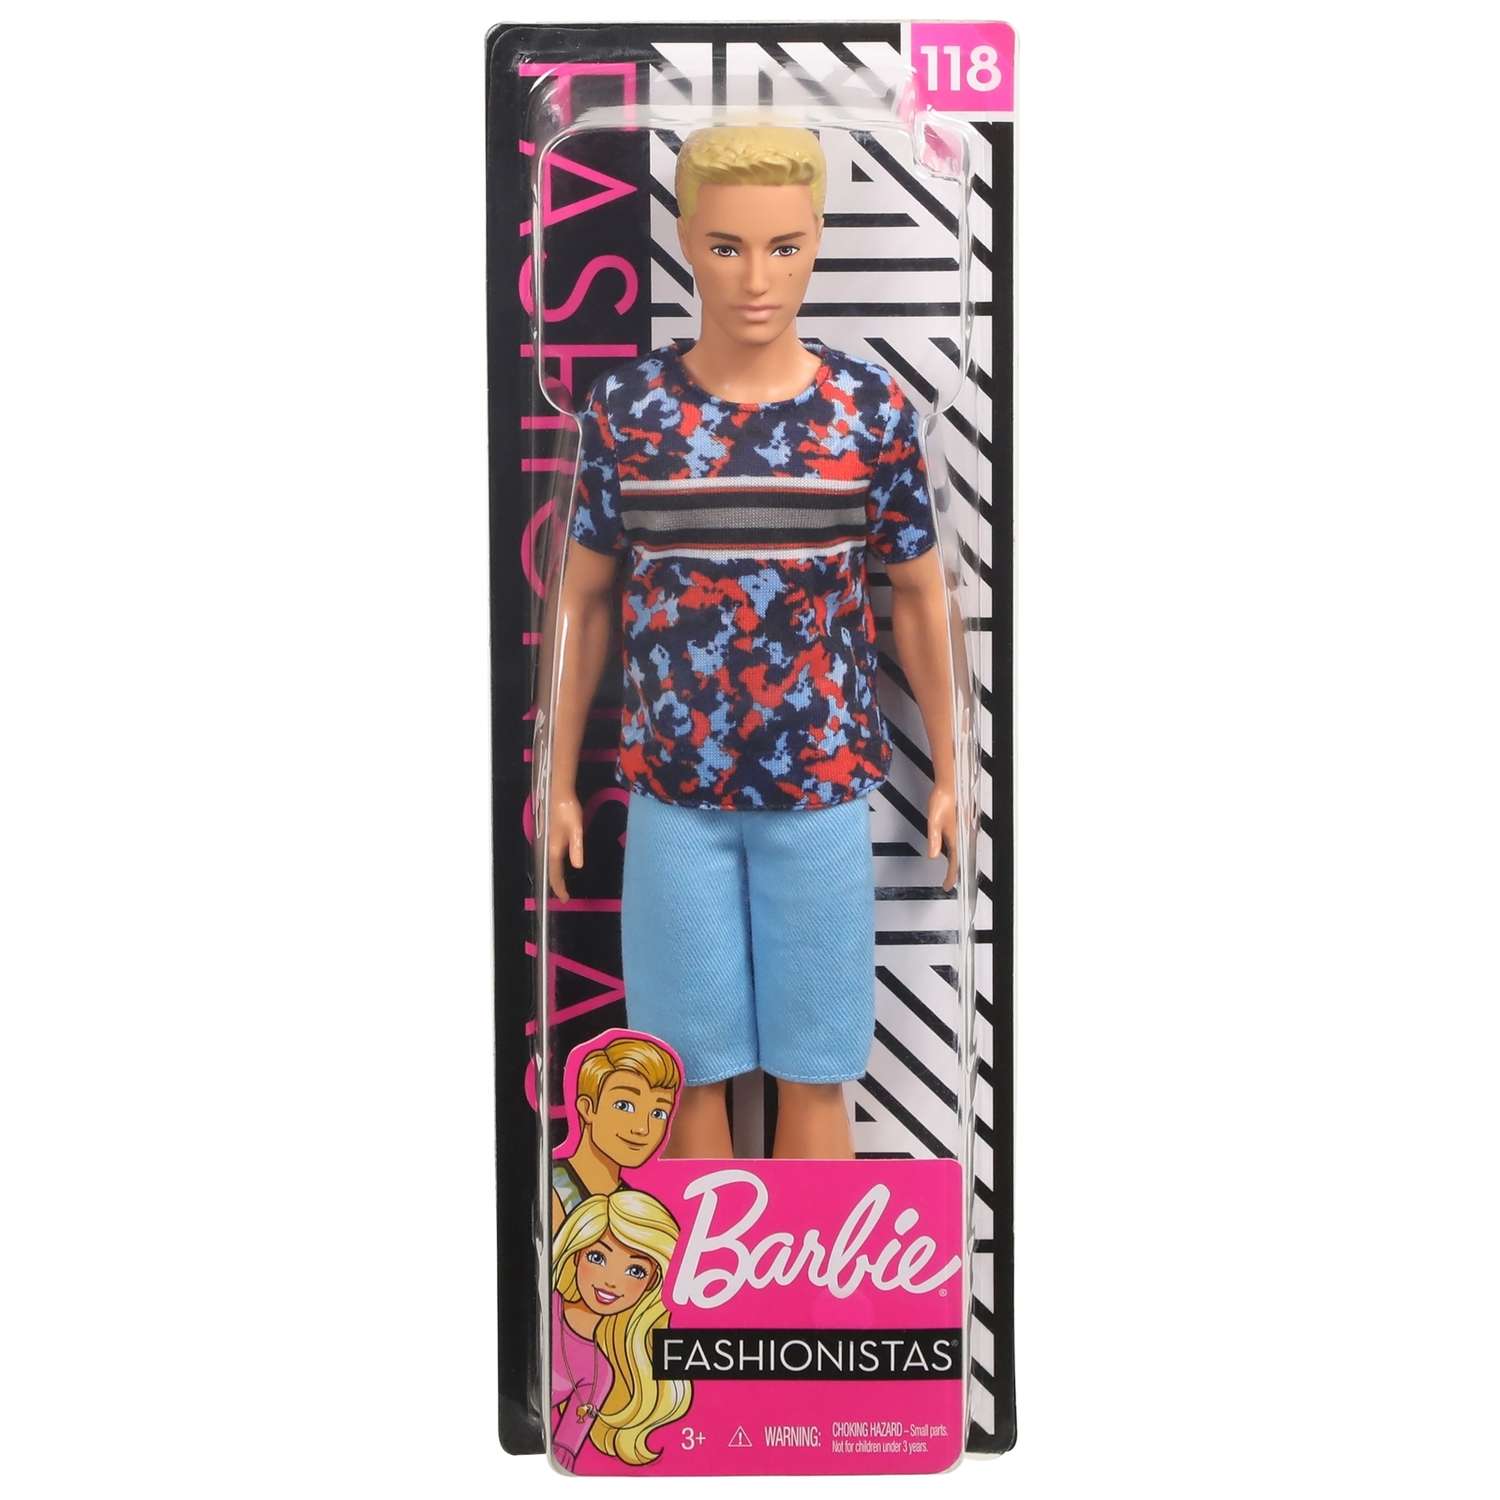 Кукла Barbie Игра с модой Кен 118 В футболке с суперпринтом FXL65 DWK44 - фото 2